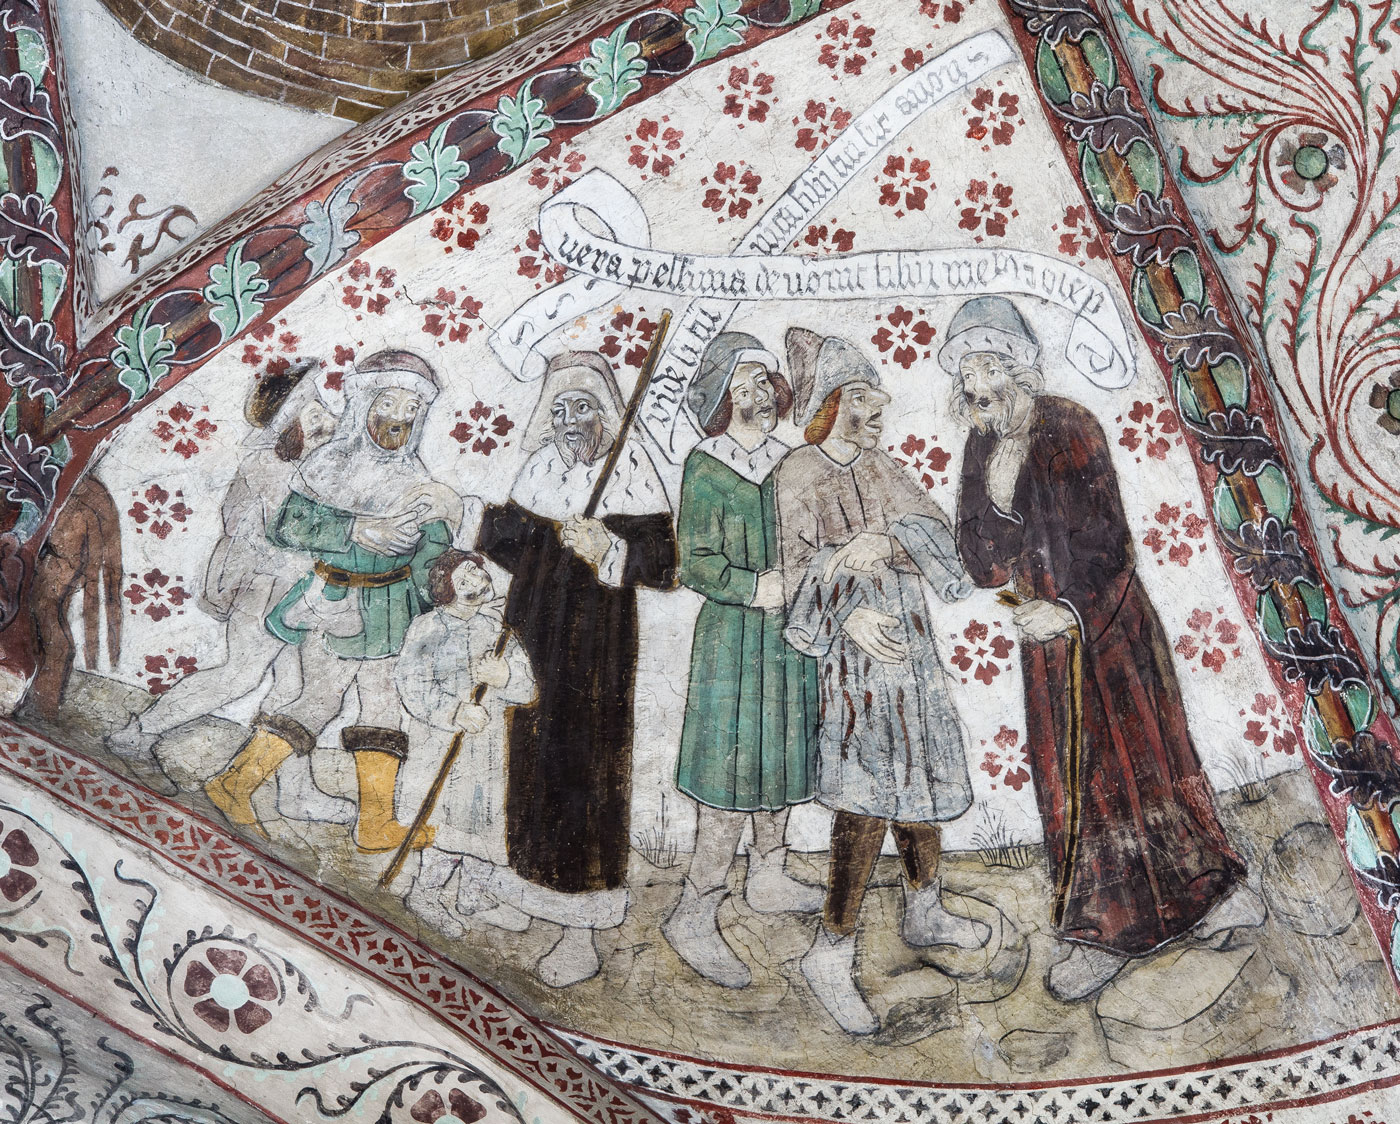 Josef säljs till Potifar (samkomponerat med Josef blodiga klädnad visas för Jakob) - Odensala kyrka